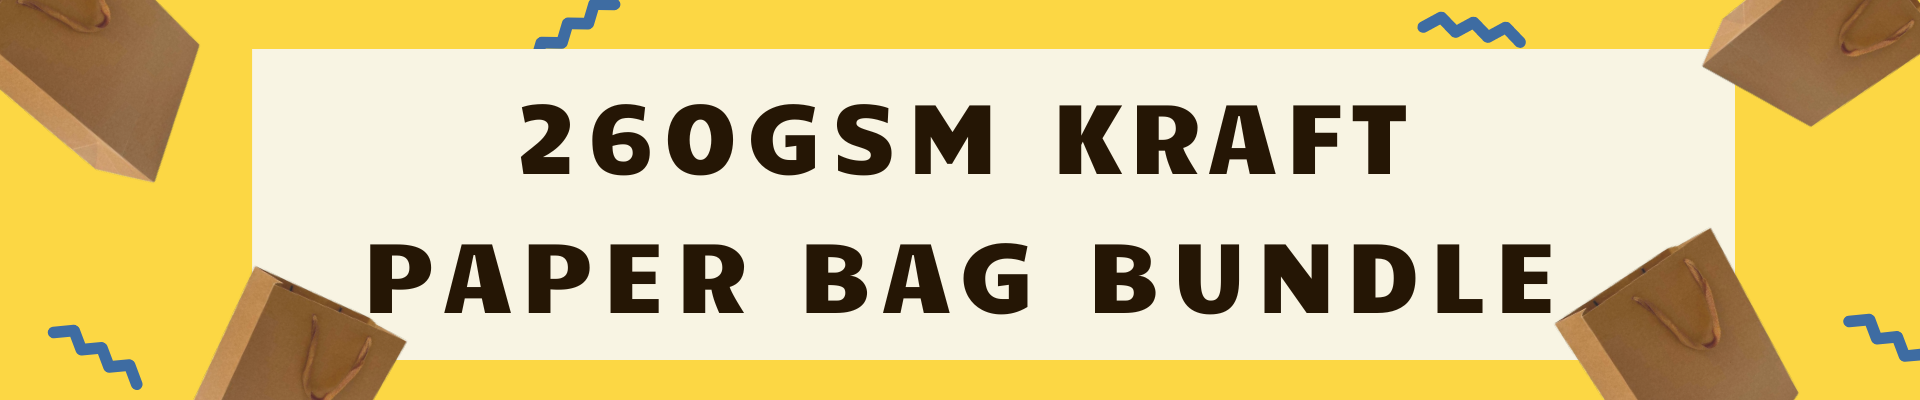 260GSM Kraft Paper Bag Bulk Discount Bundle